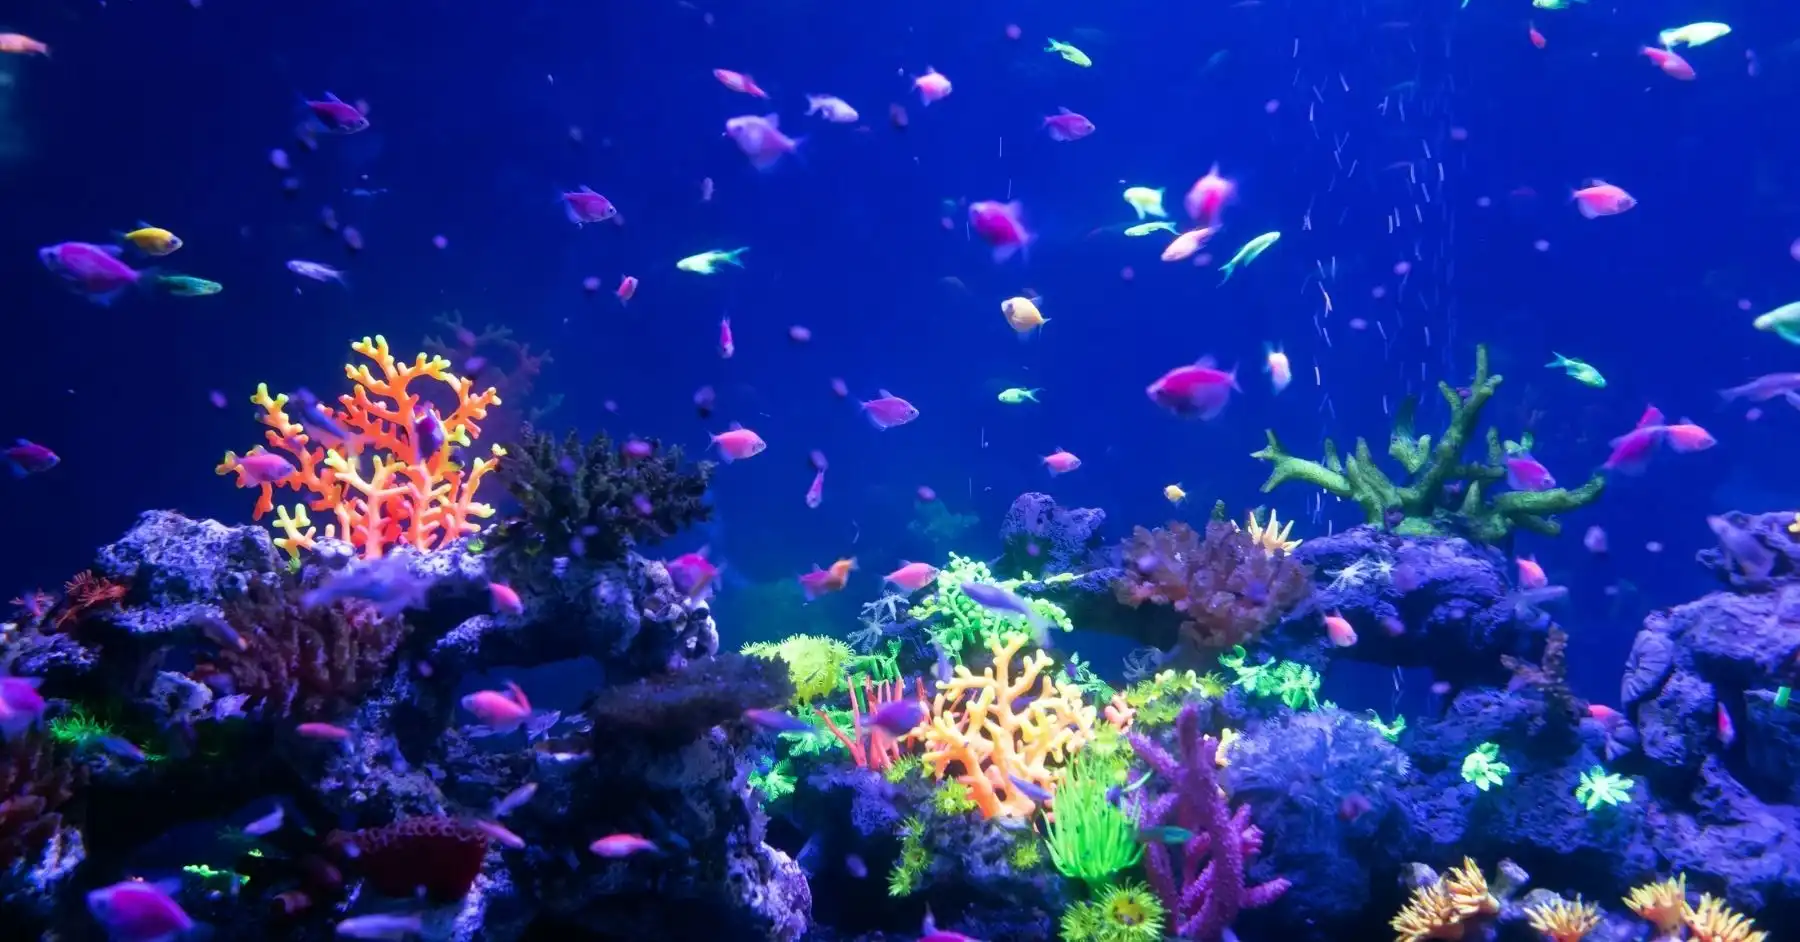 How to avoid spreading ICH in aquarium